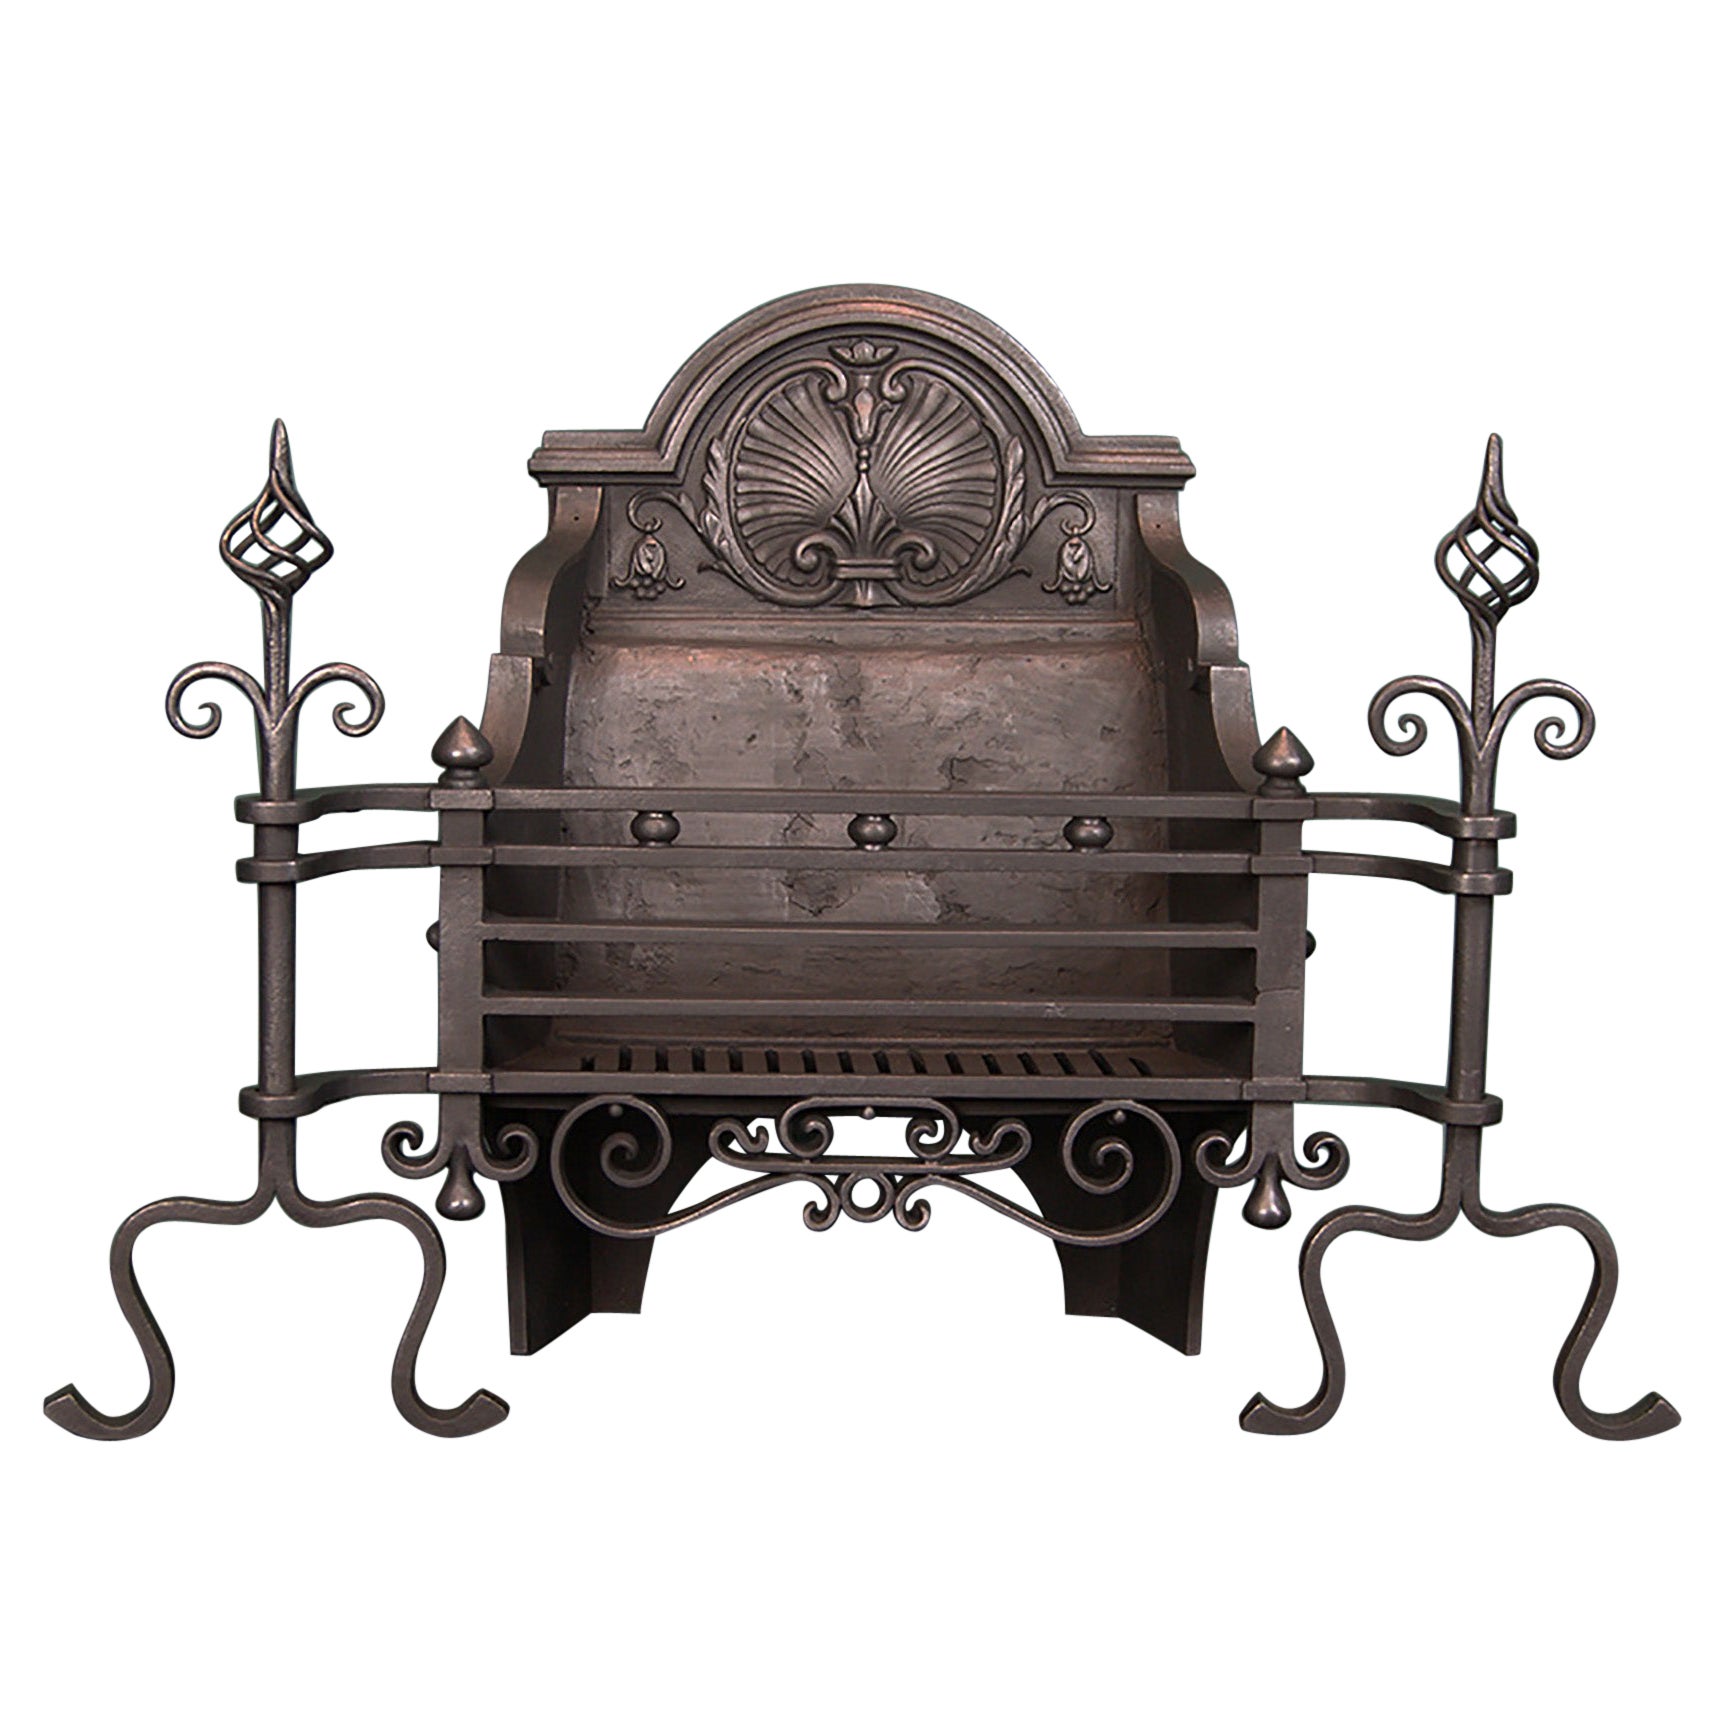 Une grille de cheminée Arts & Crafts noire forgée avec décoration de coquillages